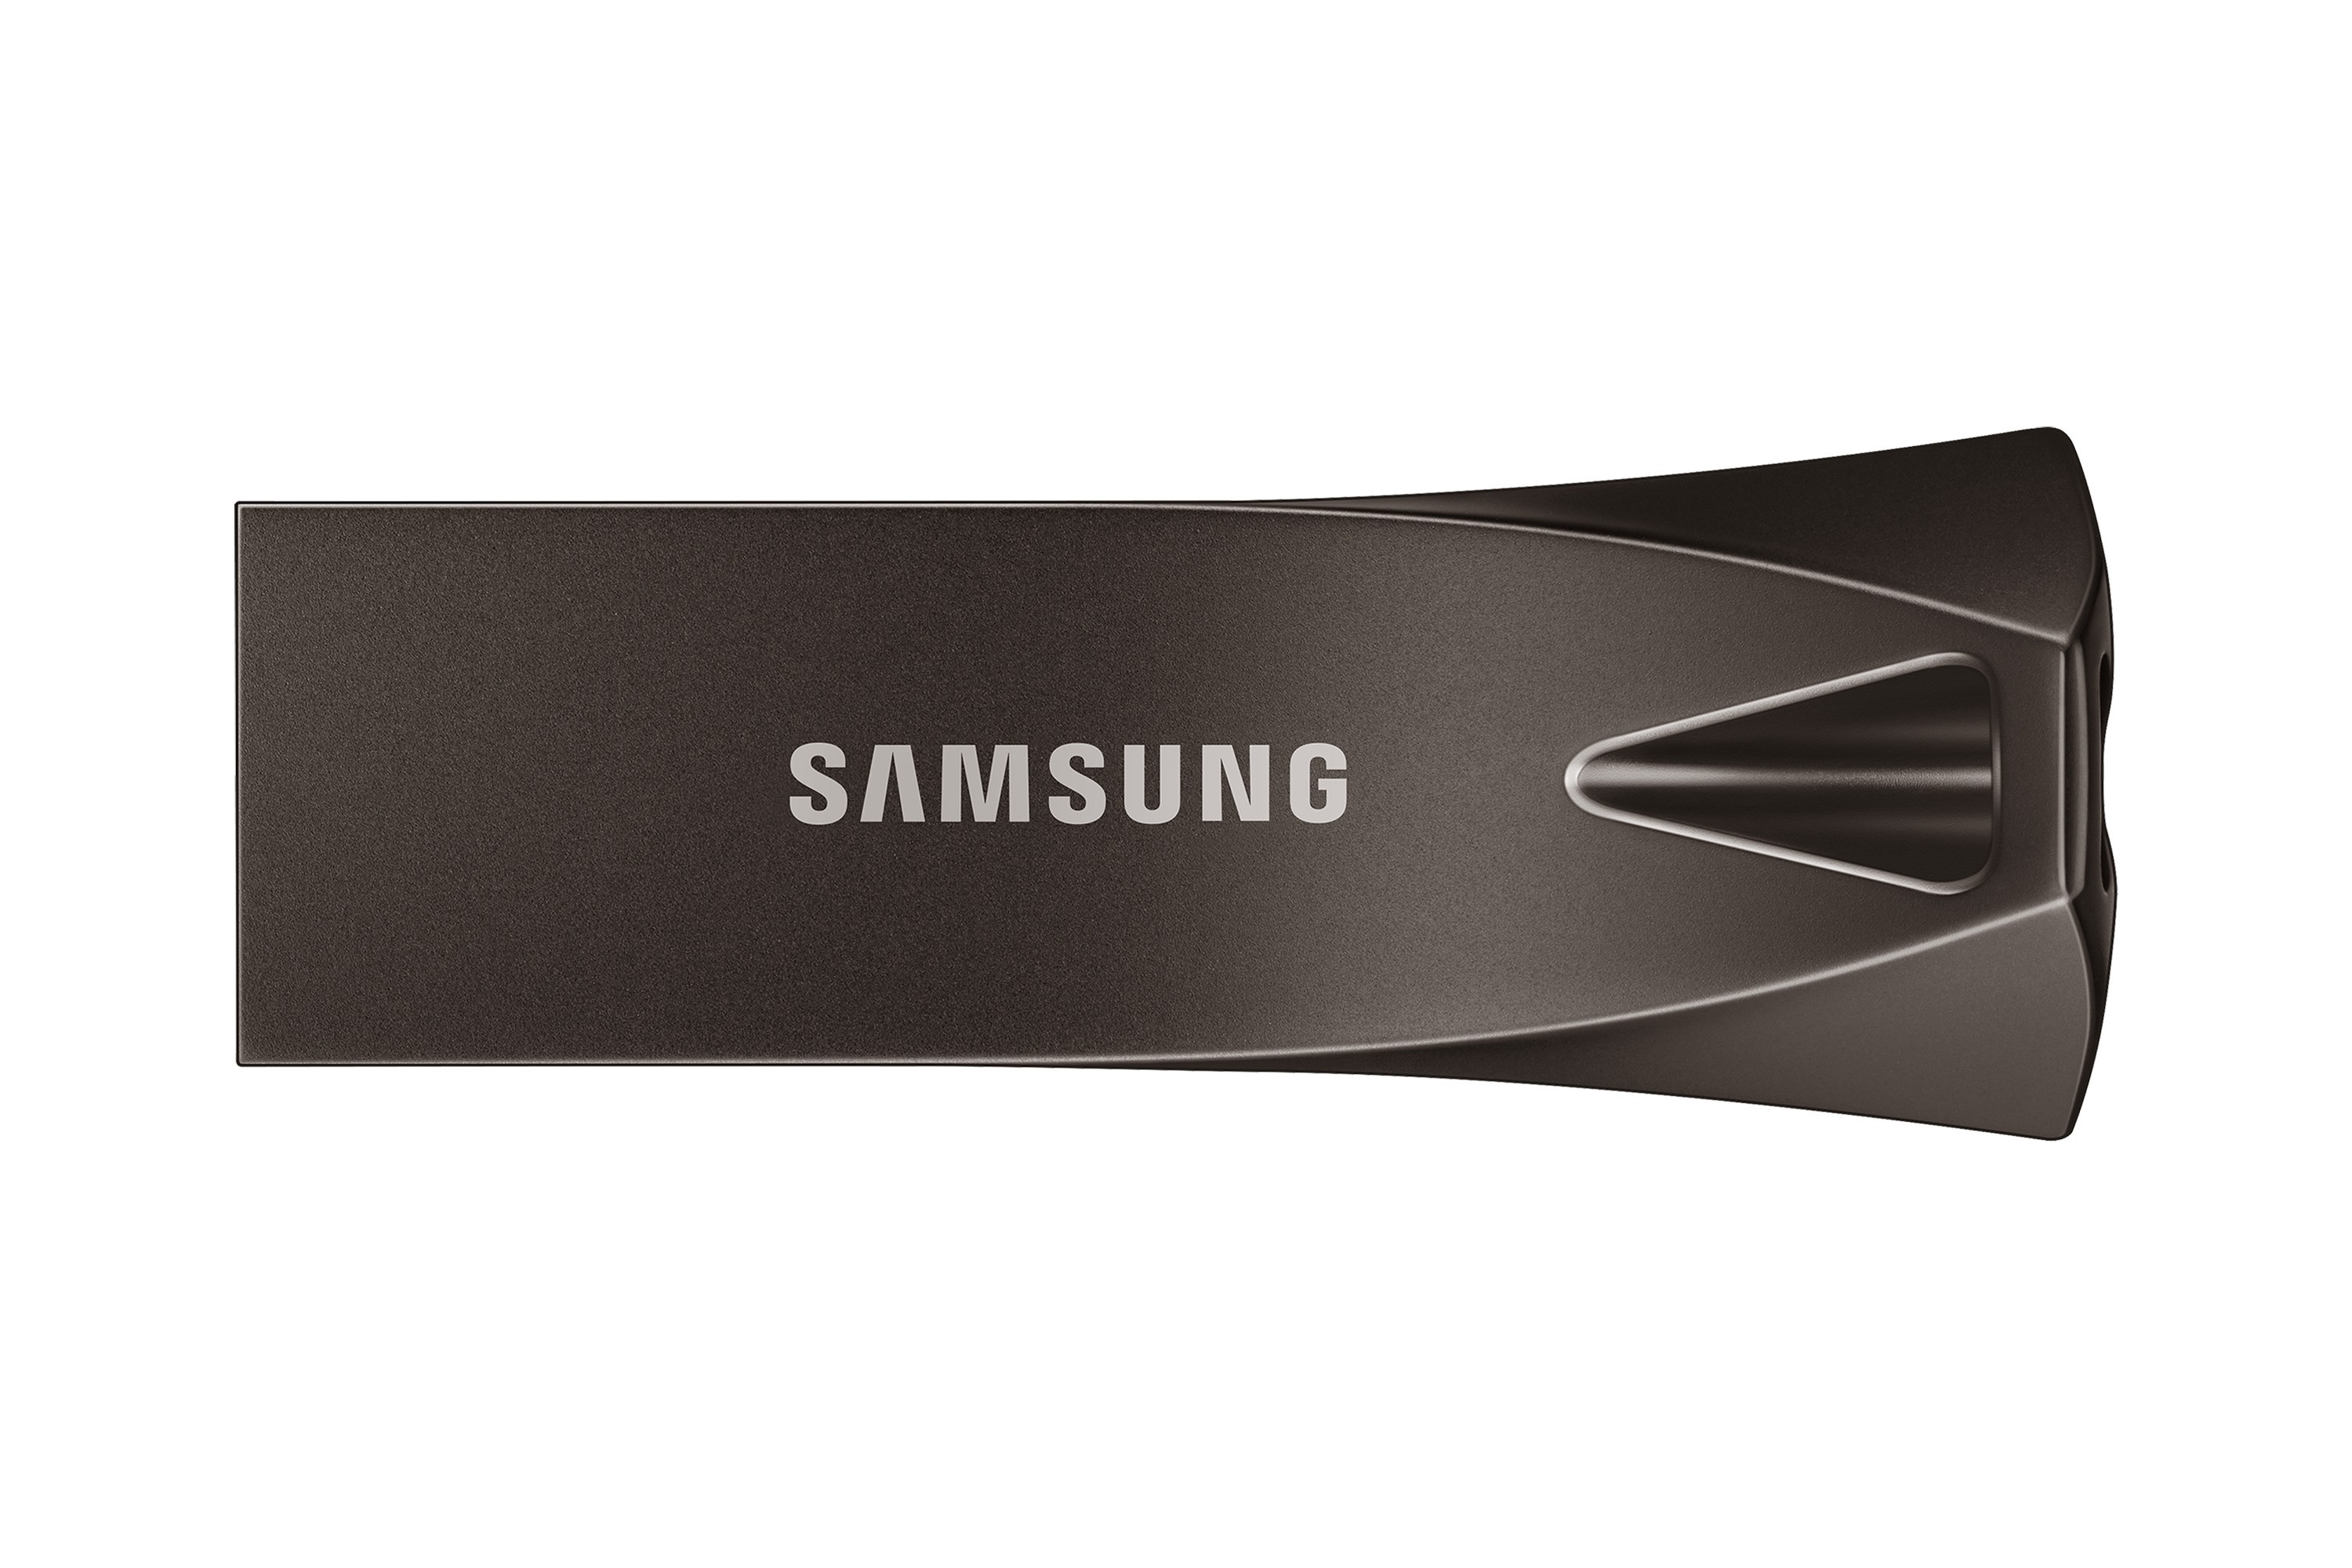 Samsung BAR Plus USB Stick 64GB USB-sticks Rvs